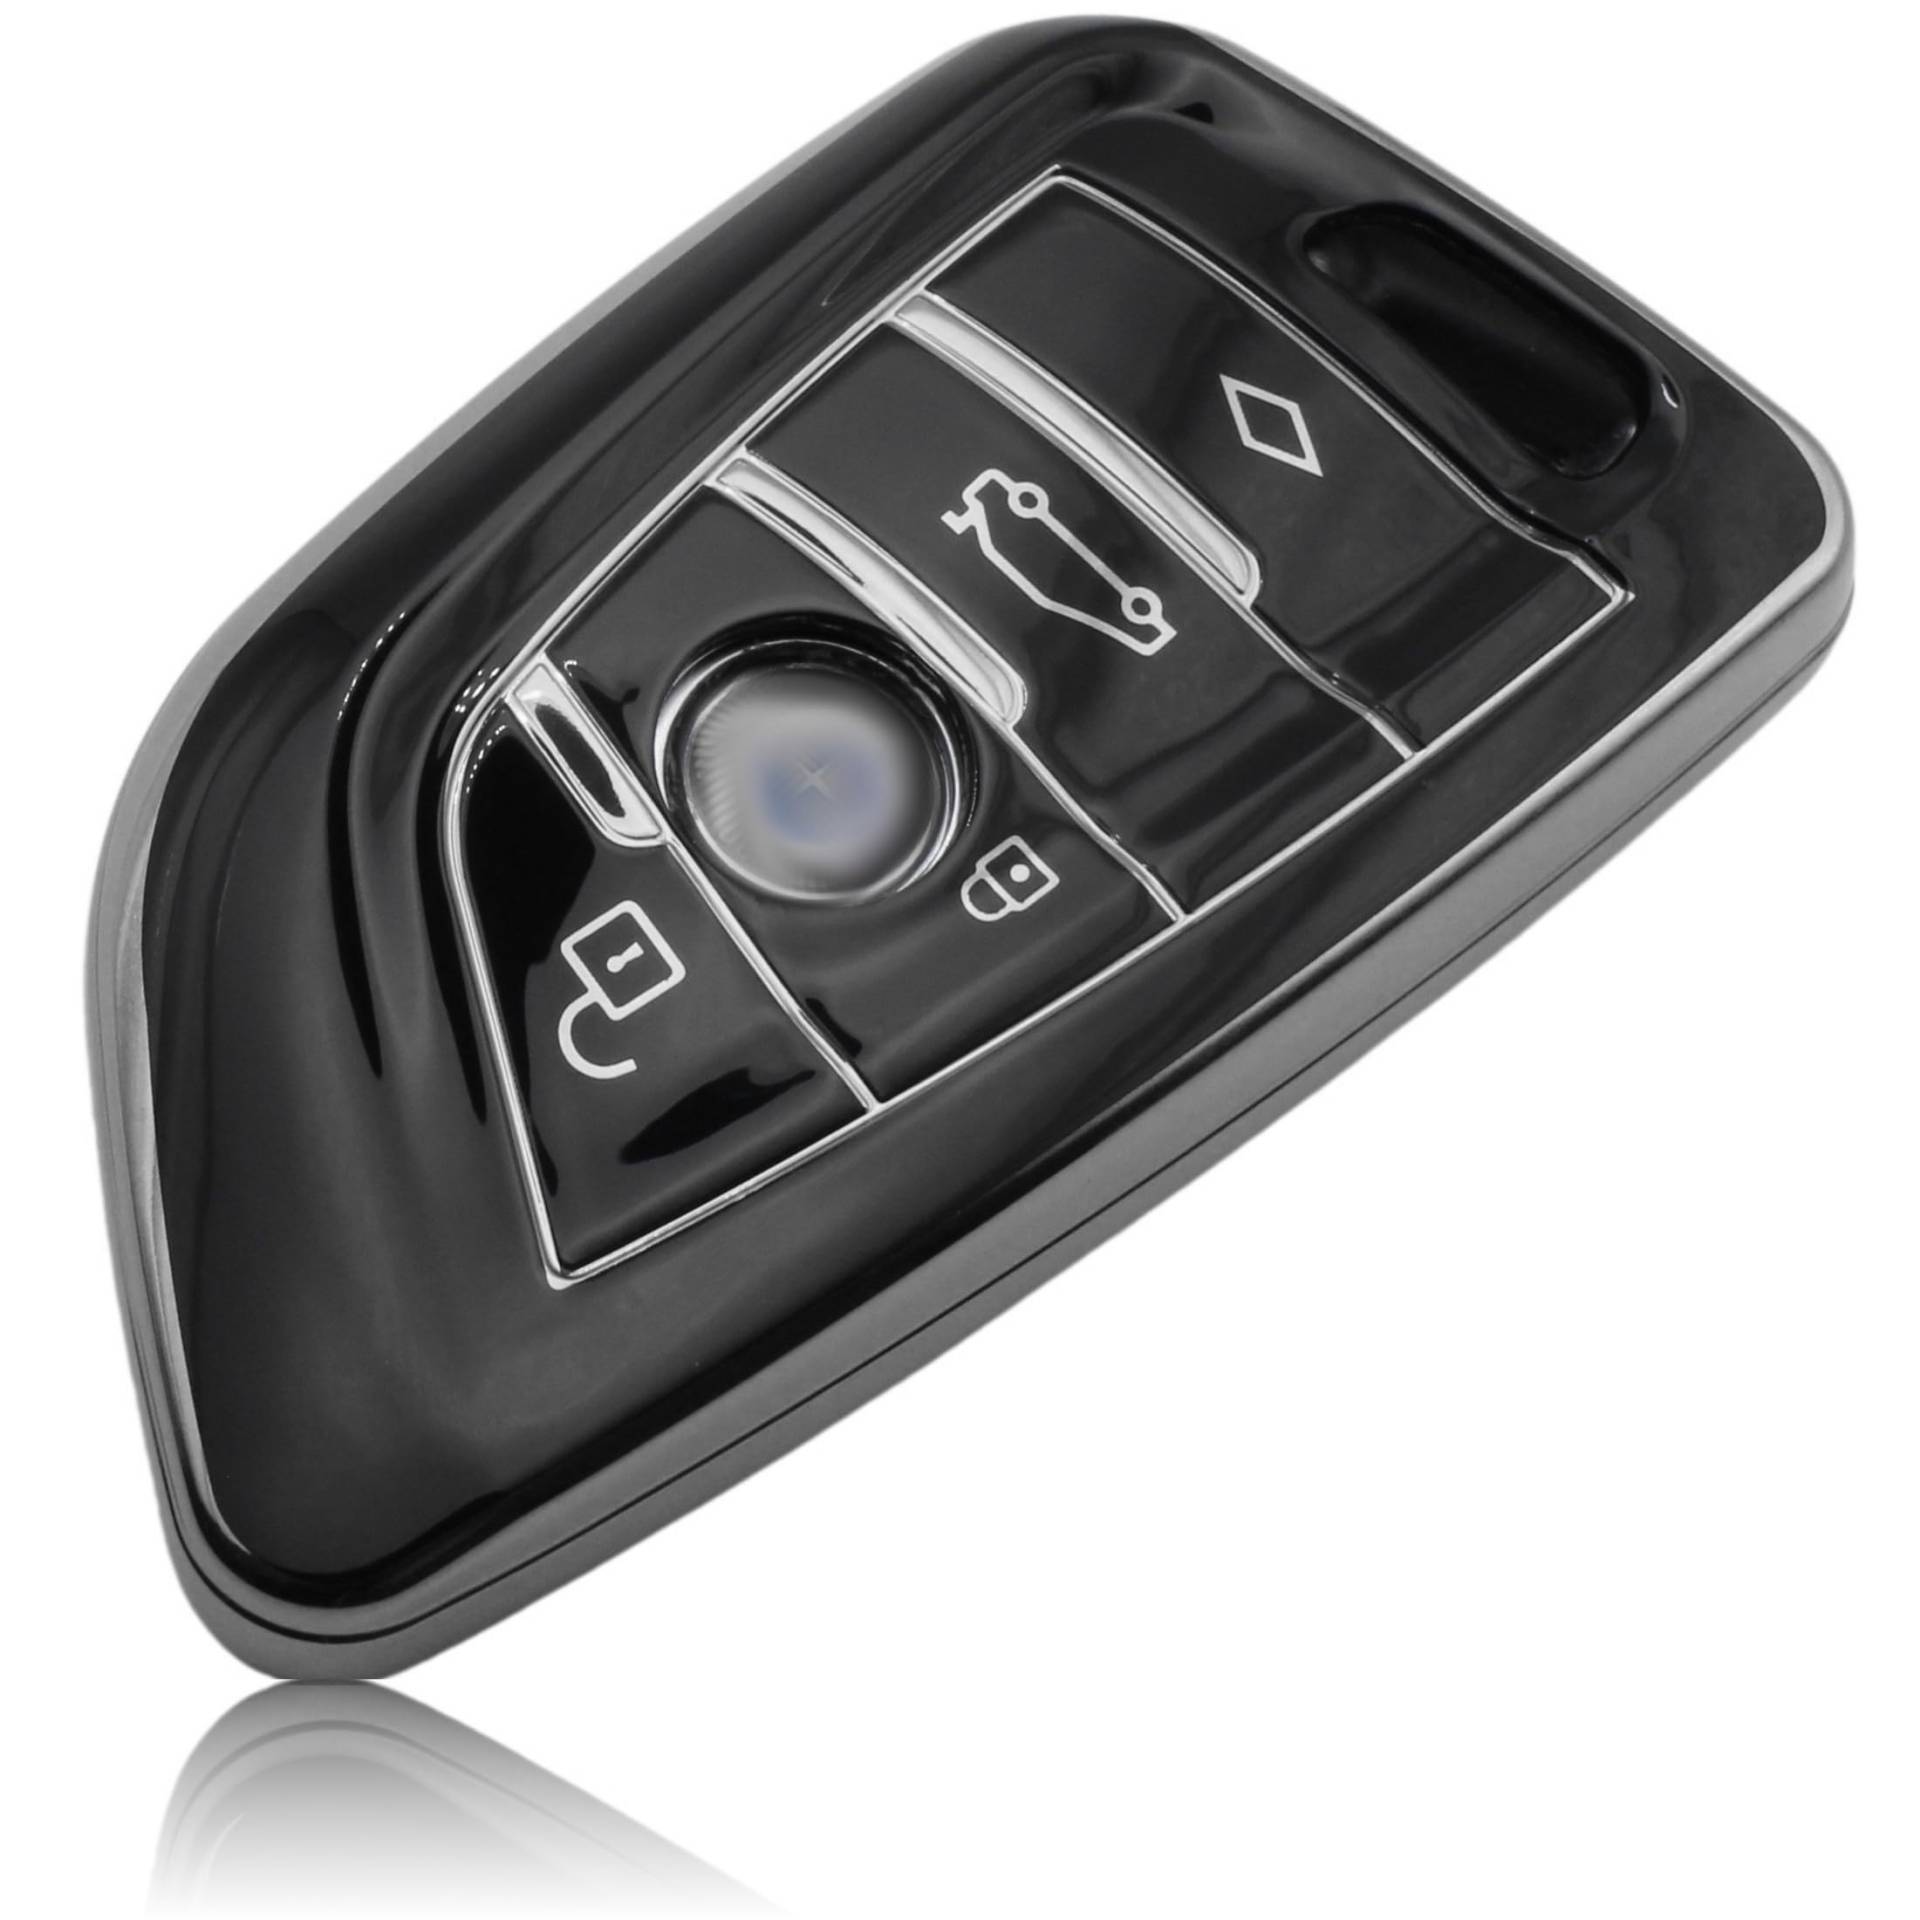 FOAMO Autoschlüssel Hülle kompatibel mit BMW 3-4-Tasten (nur Keyless-Go) - Silikon Schutzhülle Cover Schlüssel-Hülle in Schwarz-Silber von FOAMO